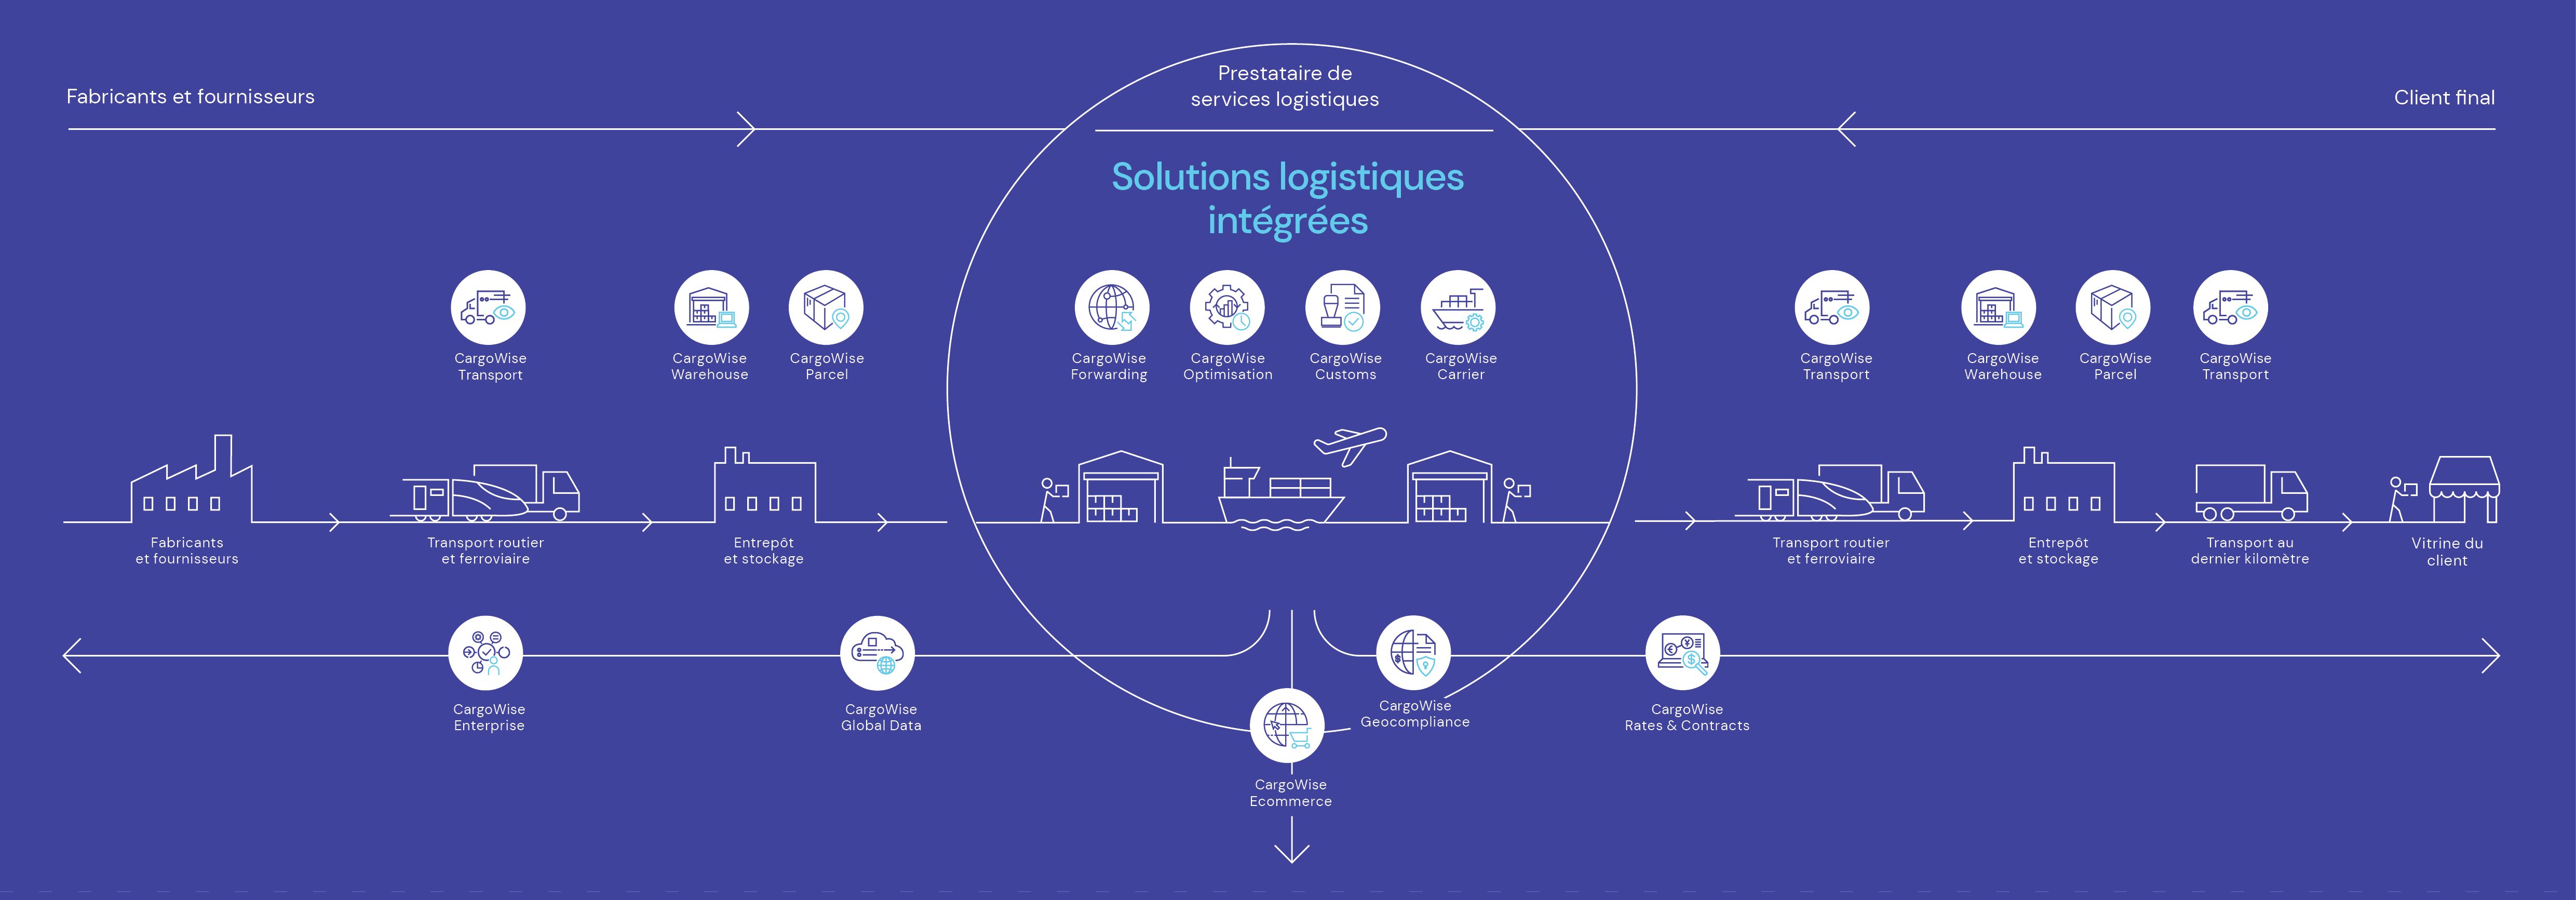 Solutions logistiques intégrées